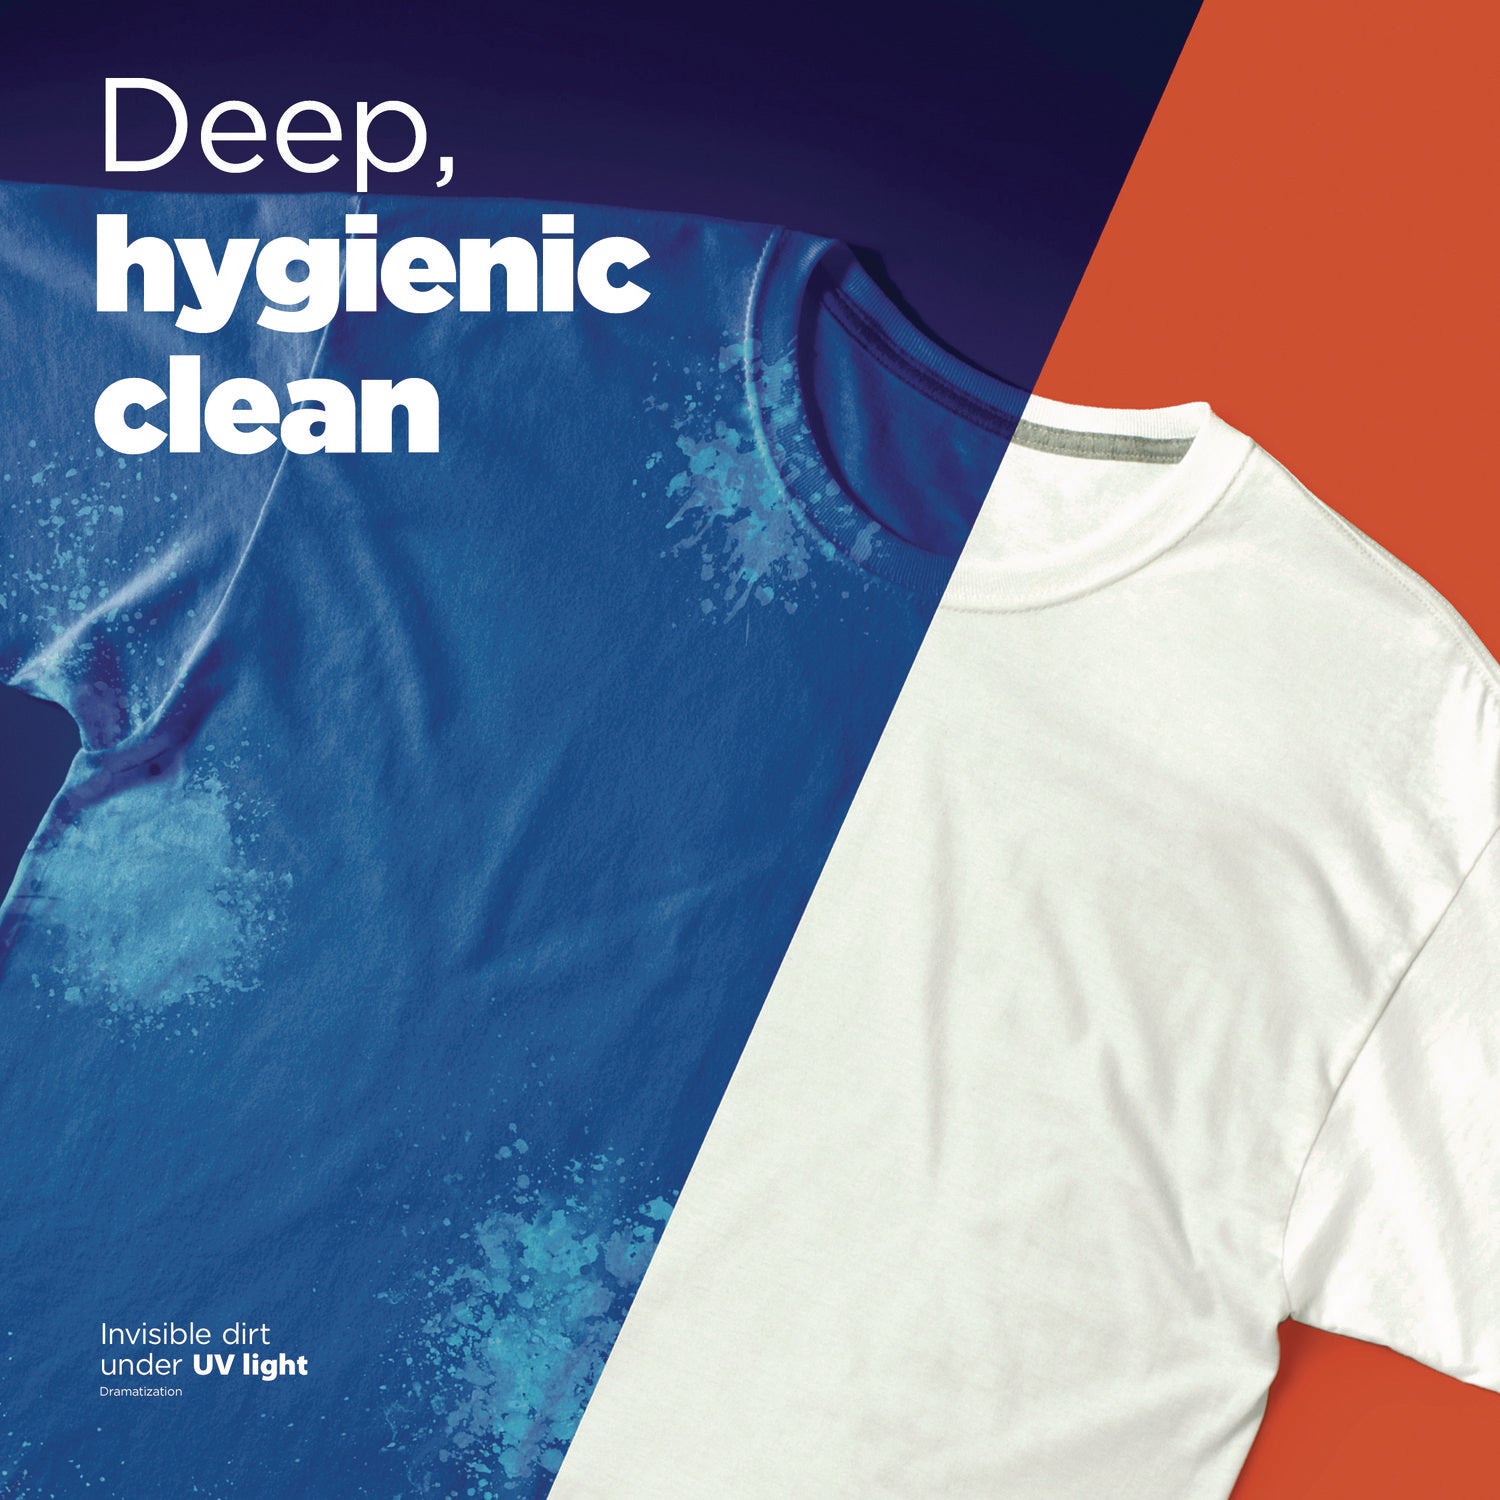 hygienic-clean-heavy-10x-duty-liquid-laundry-detergent-original-scent-132-oz-pour-bottle-4-carton_pgc12216 - 2